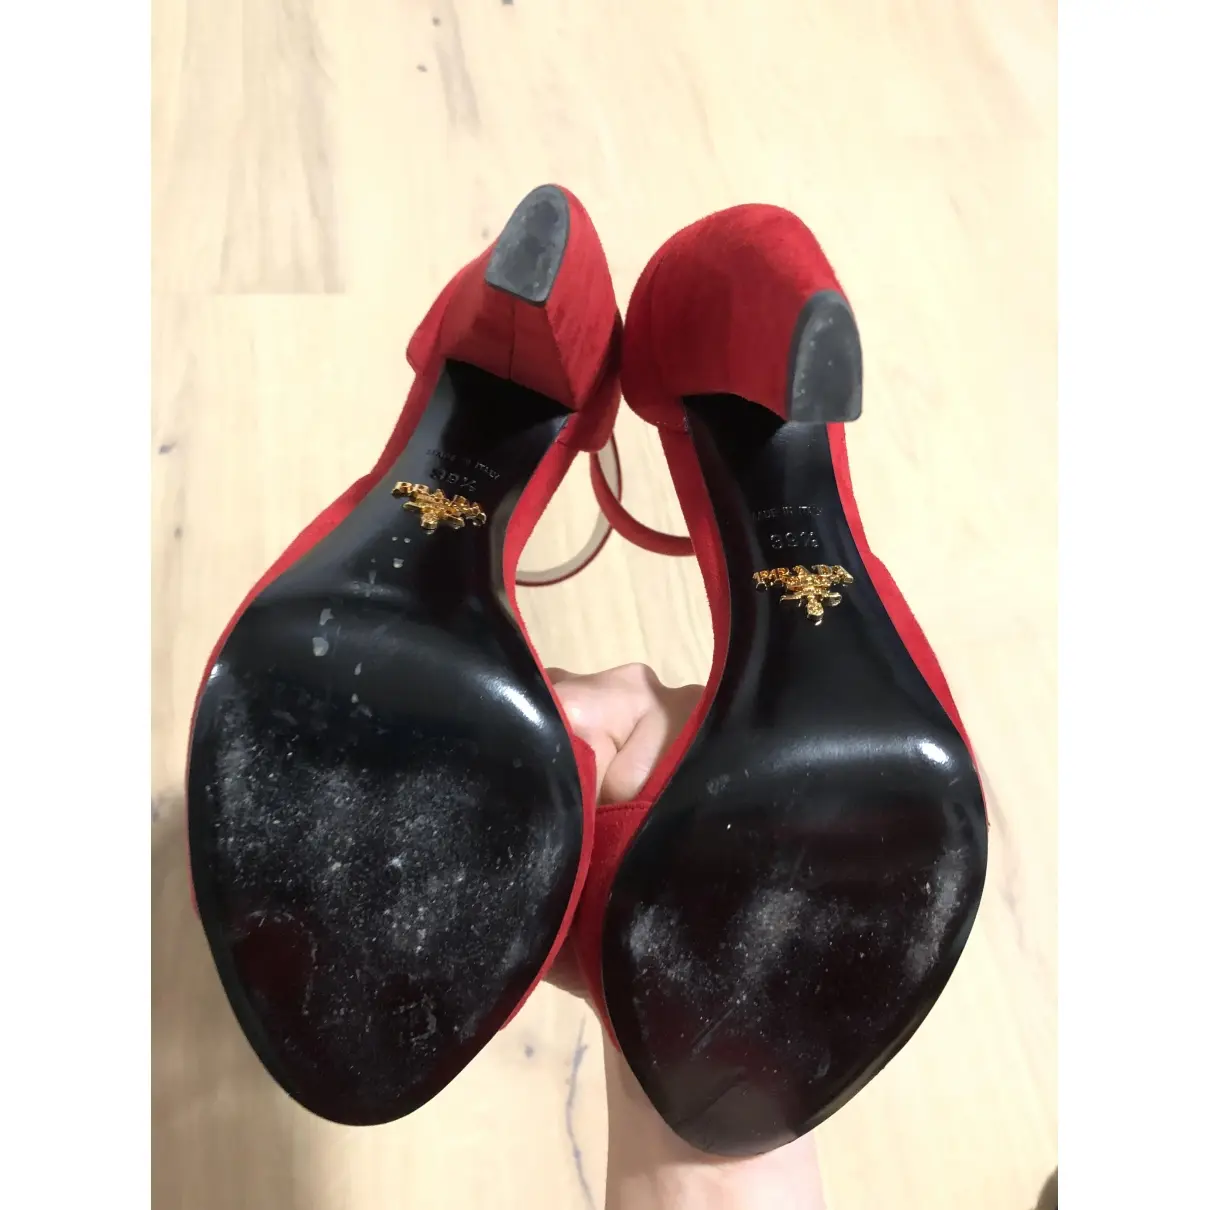 Buy Prada Heels online